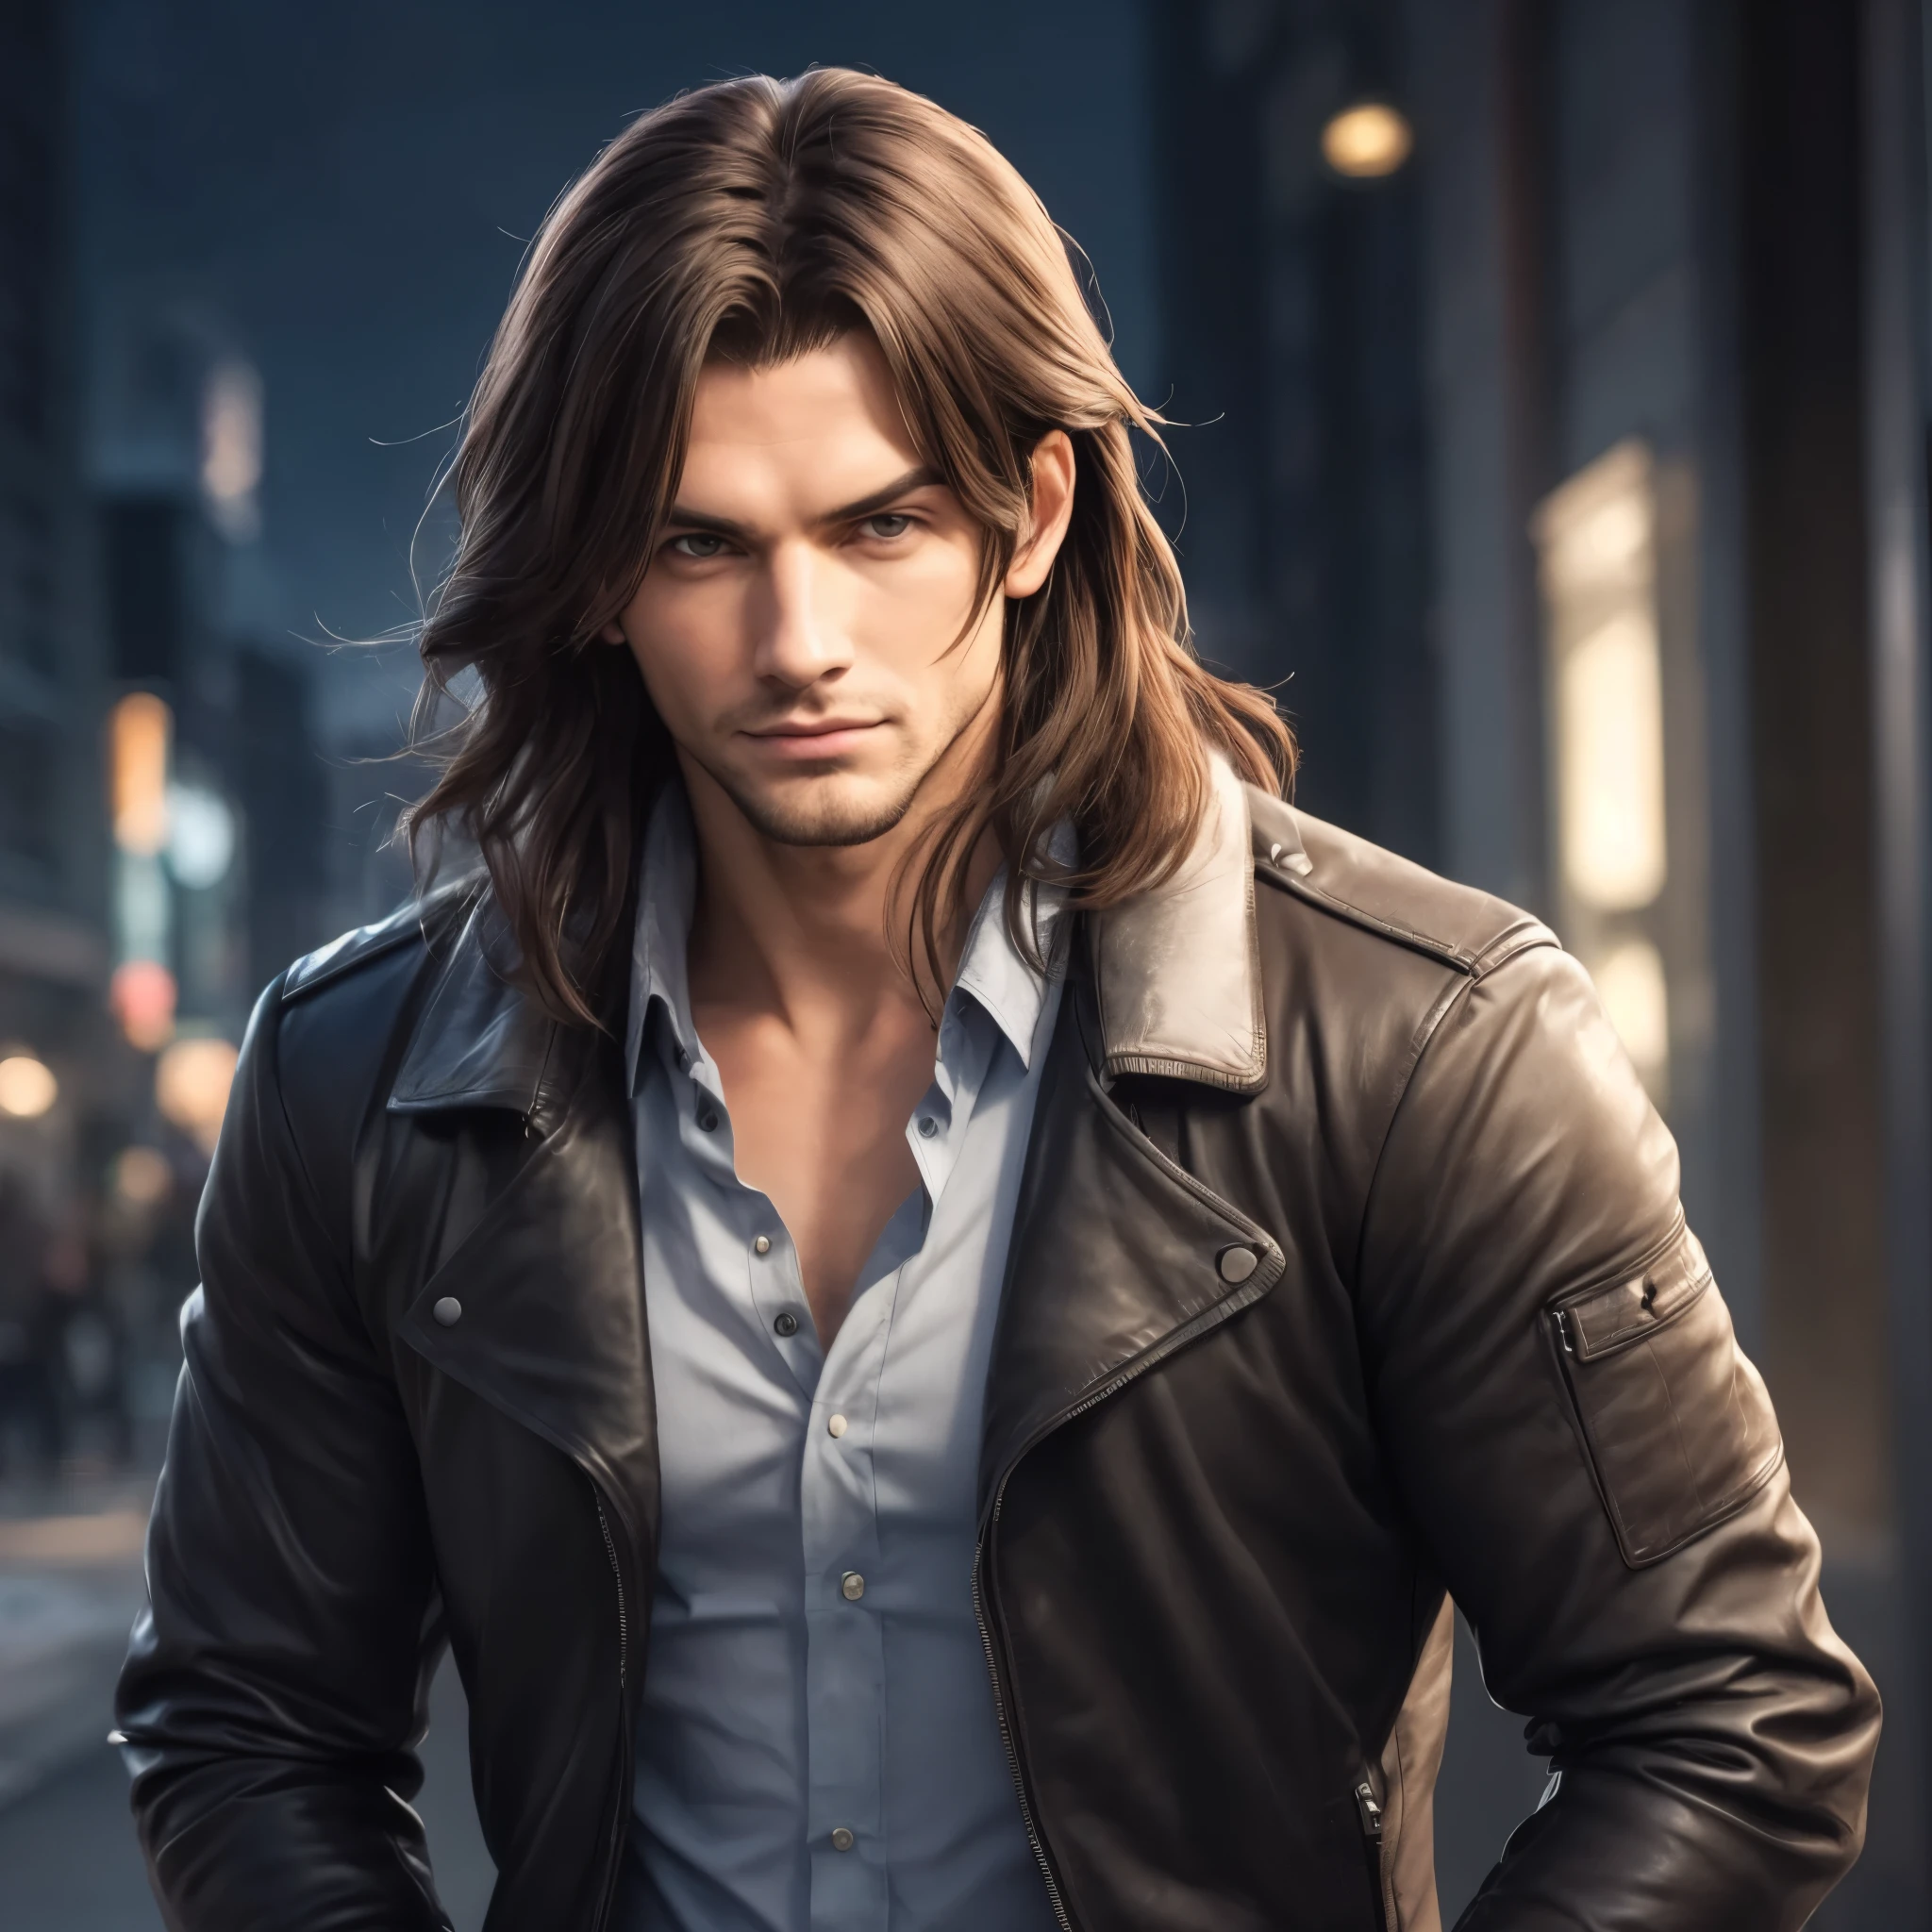 hübscher Mann mit langen Haaren und einer Lederjacke steht in einer Stadt